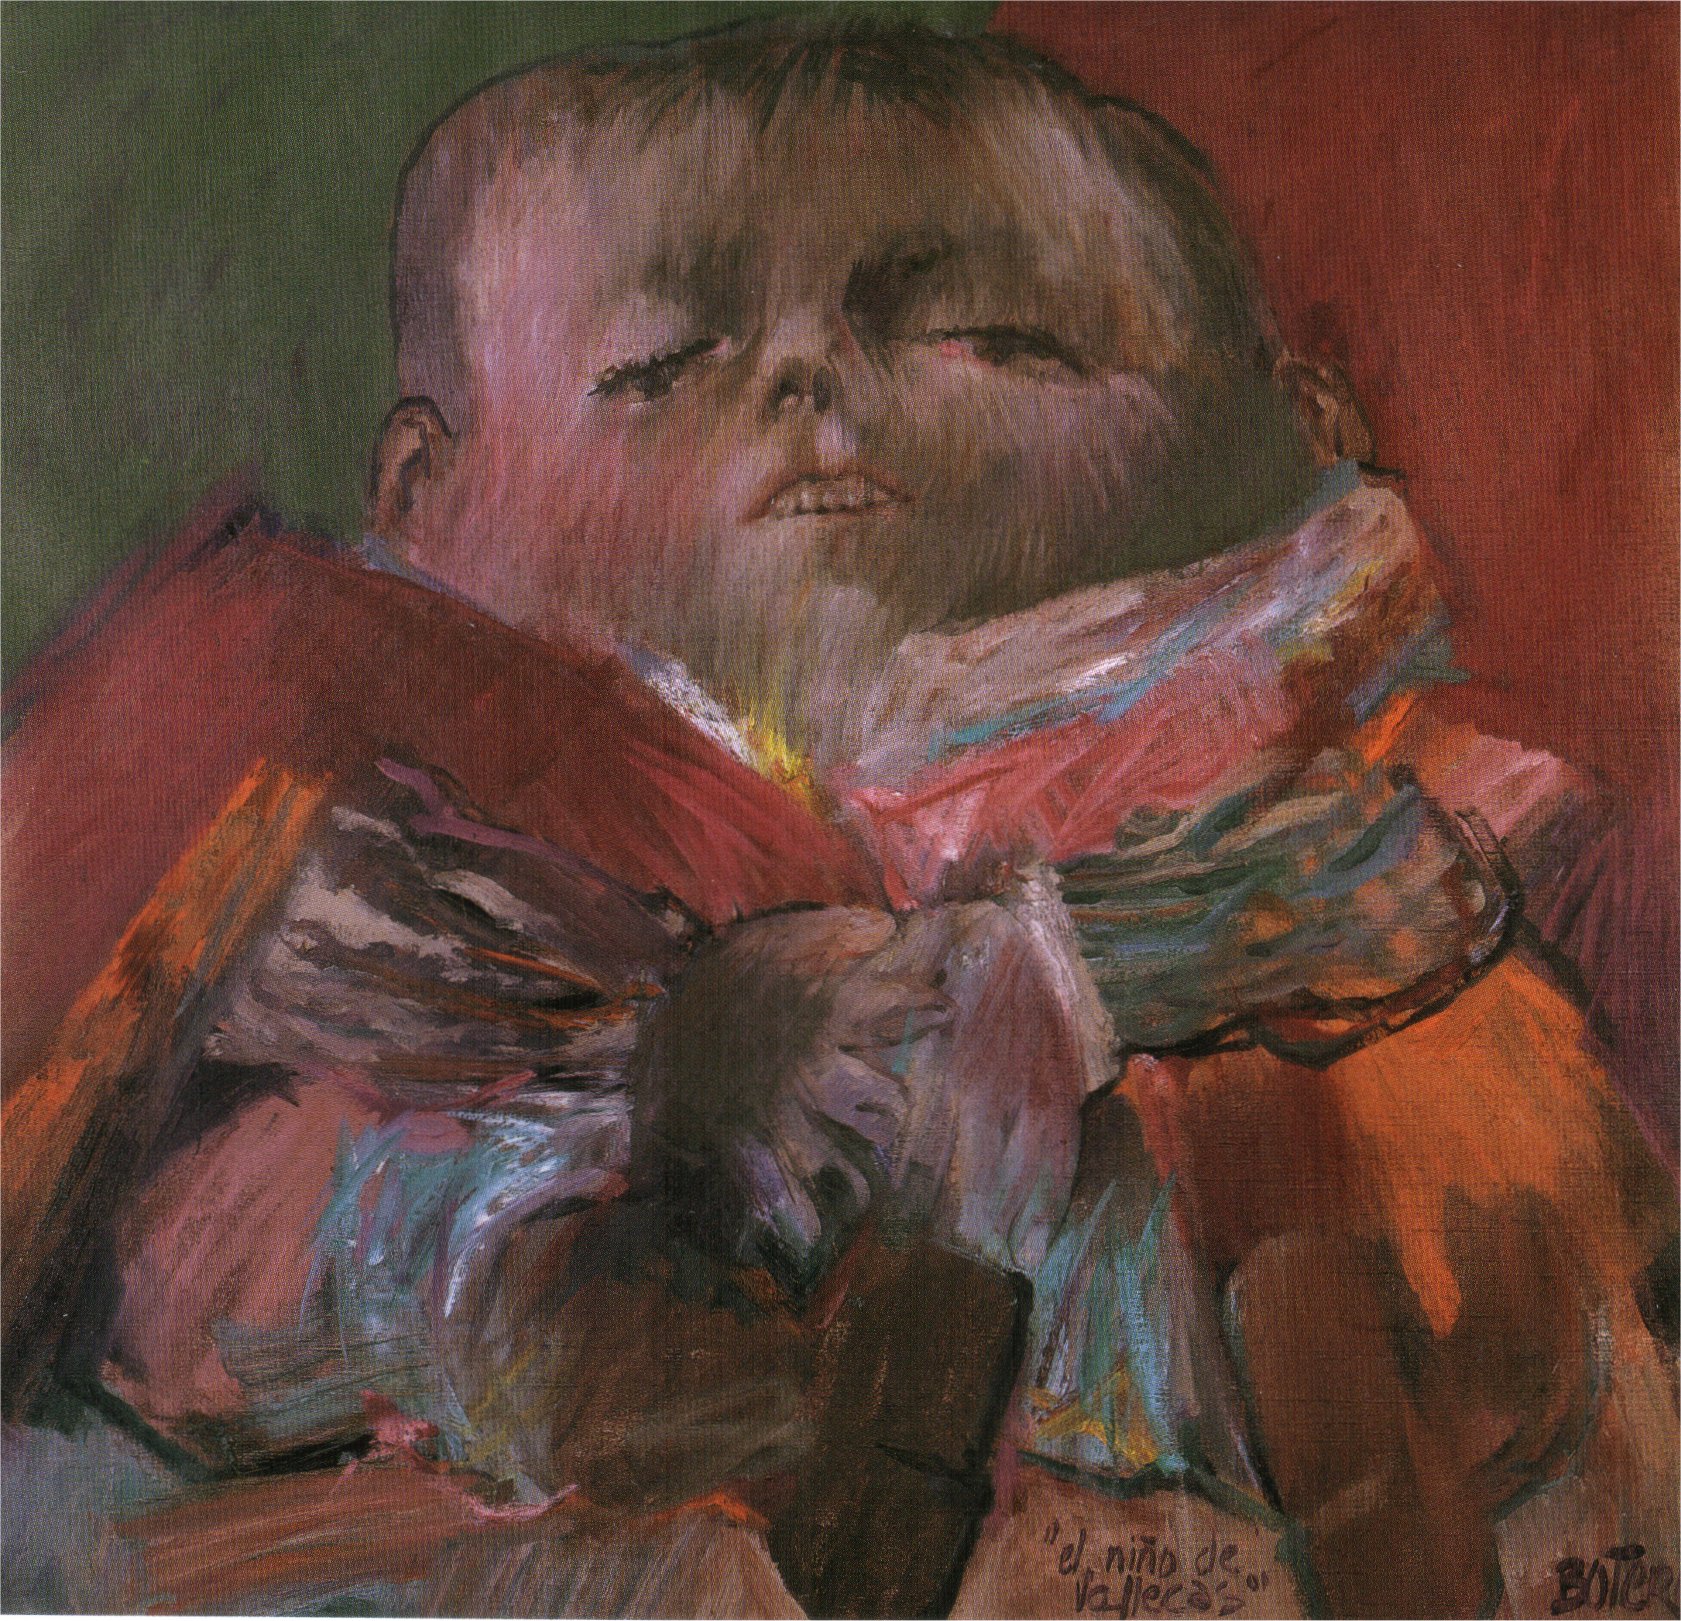 Vallecas the Child (after Velázquez) (1959).